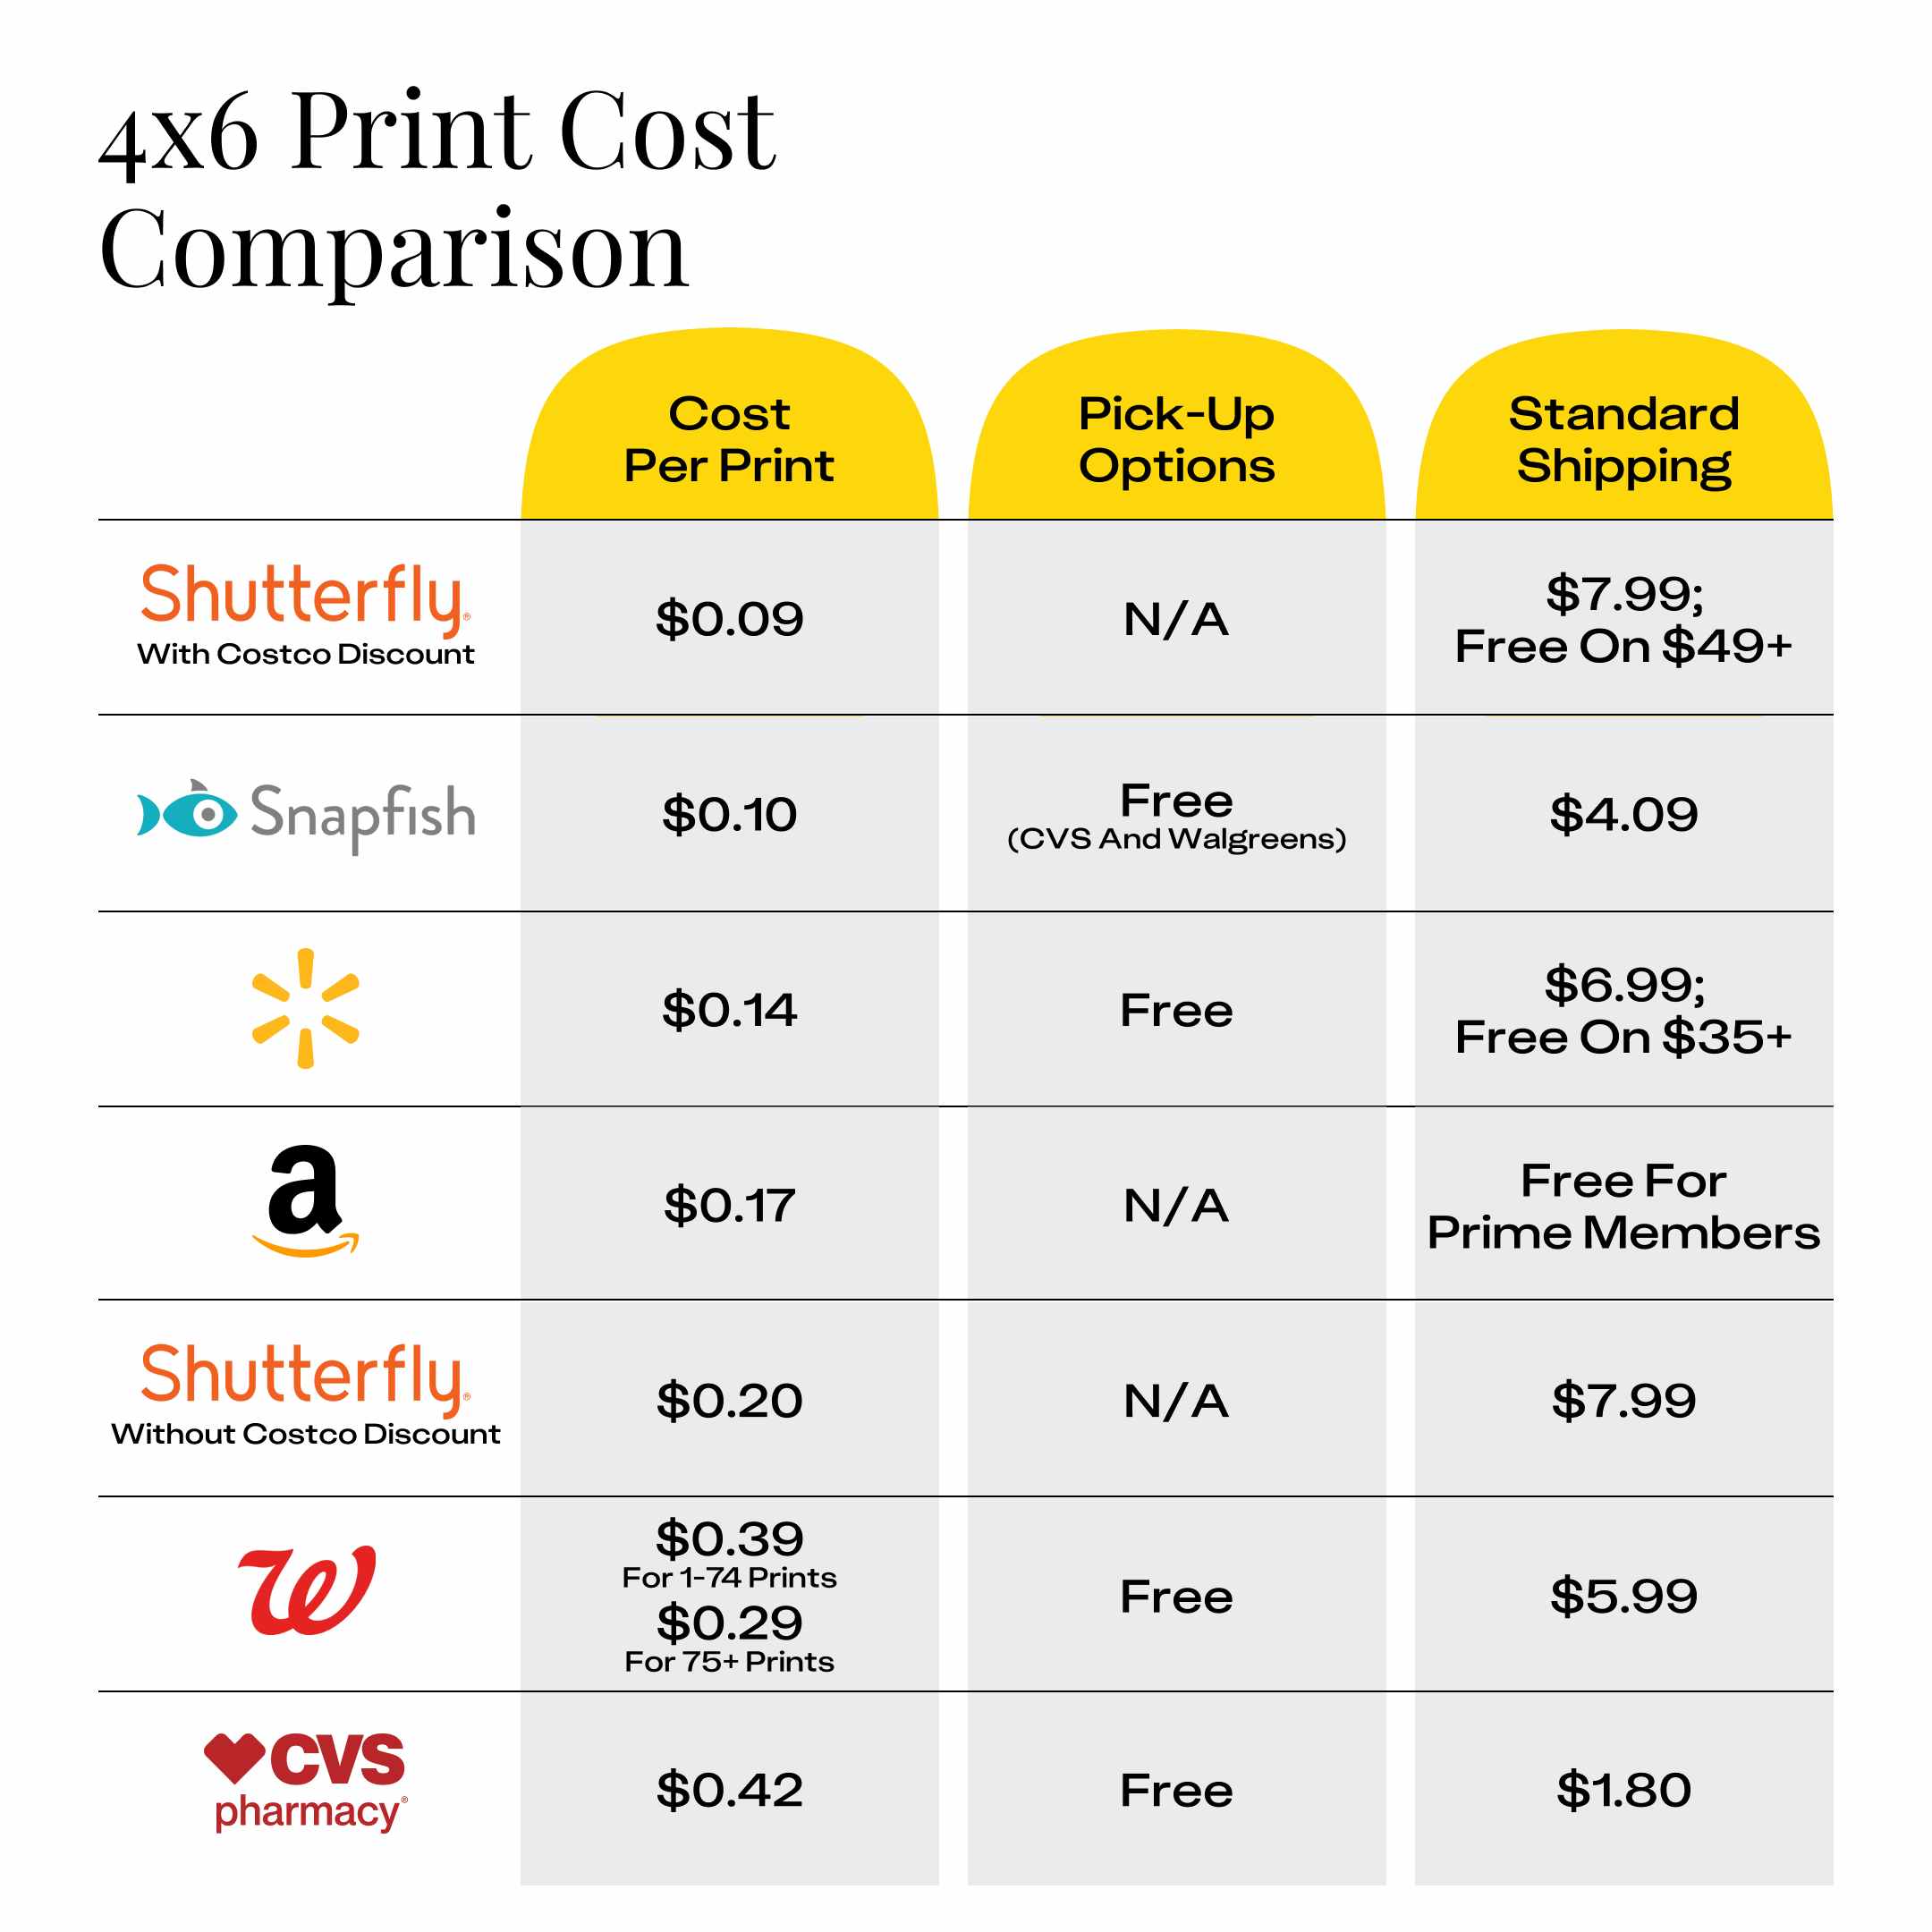 costco-4x6-print-cost-comparison